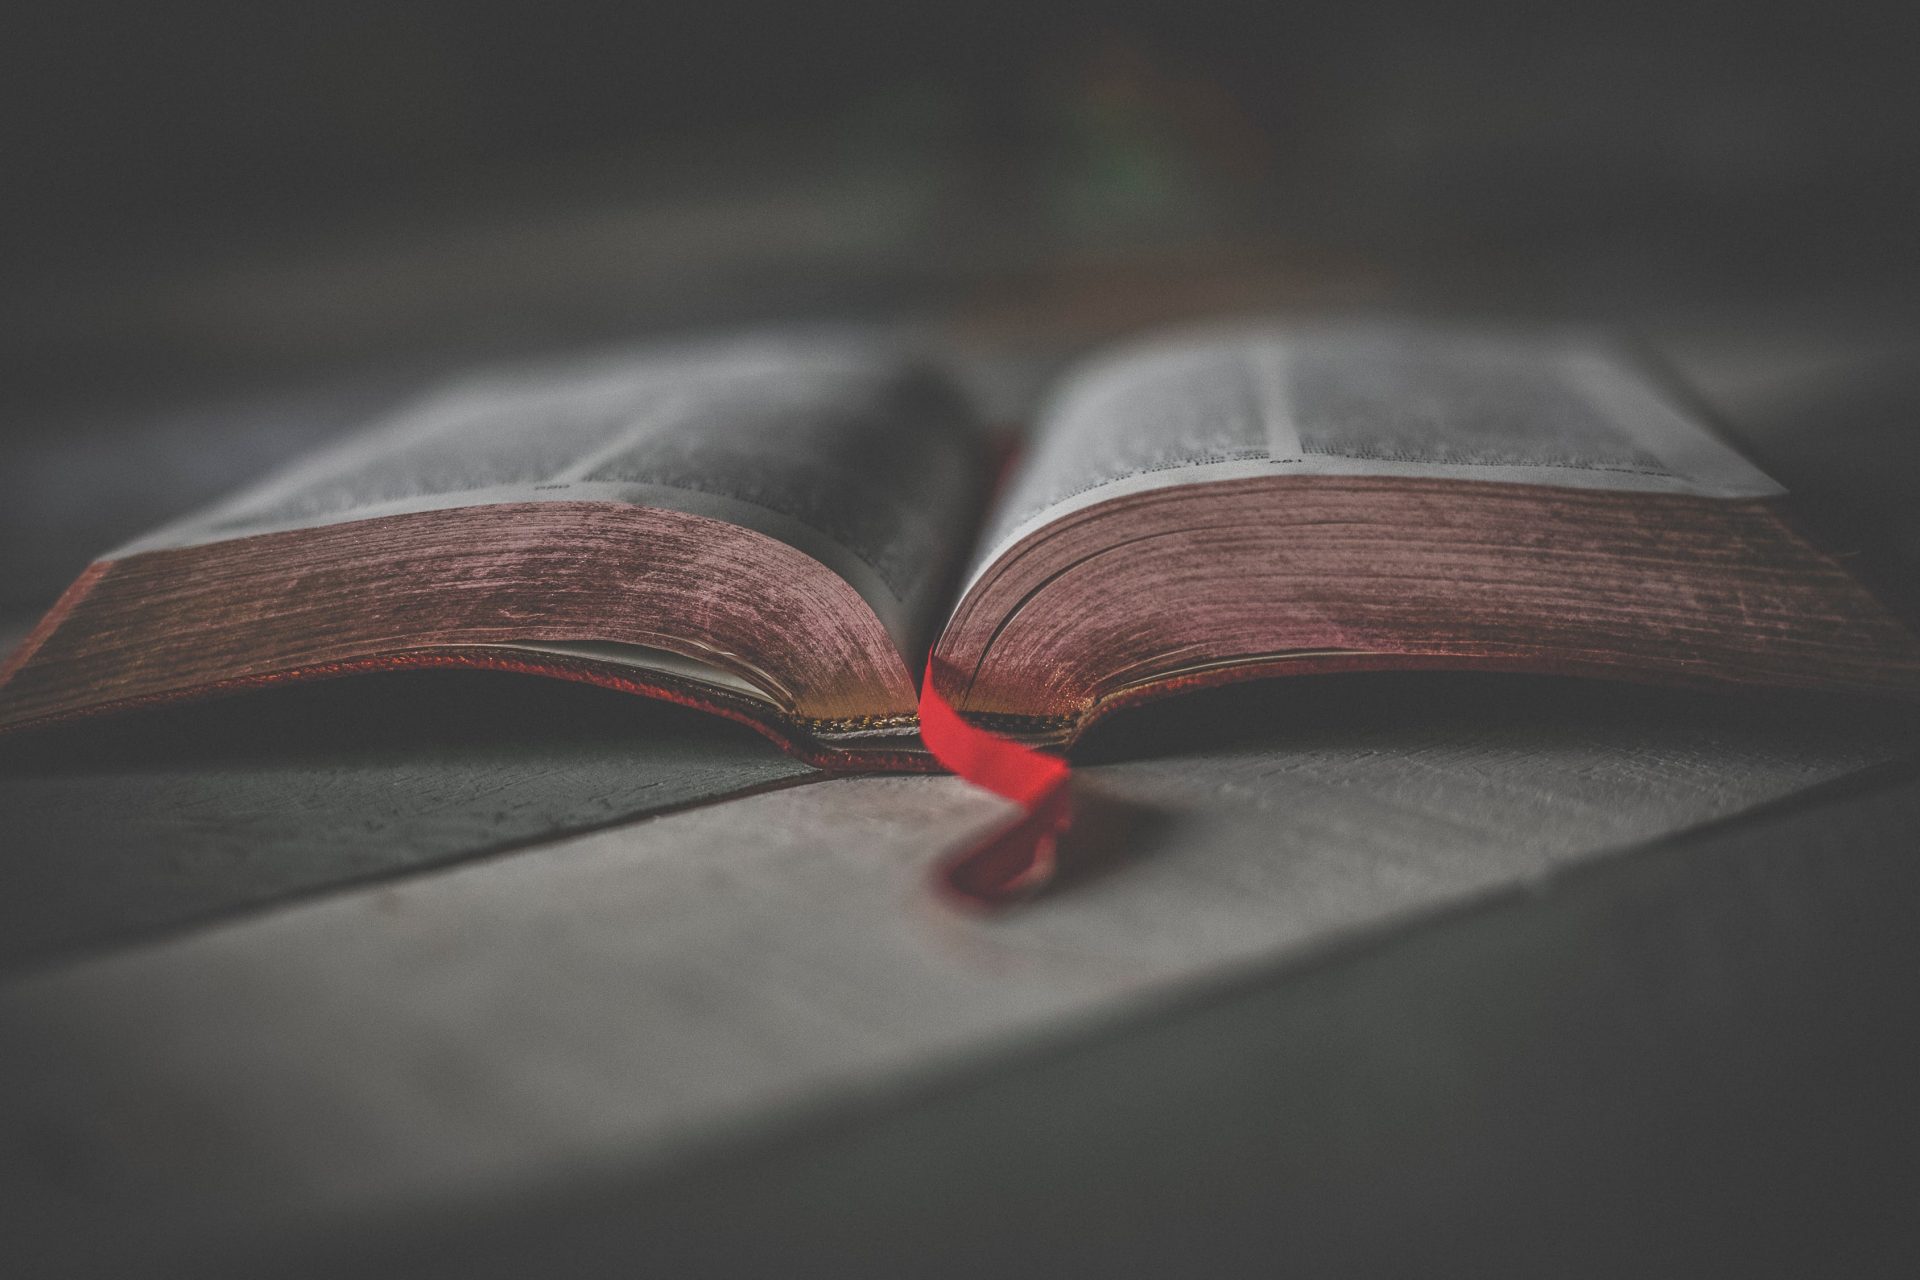 Je li Biblija koju danas čitamo promijenjena u usporedbi s originalom?